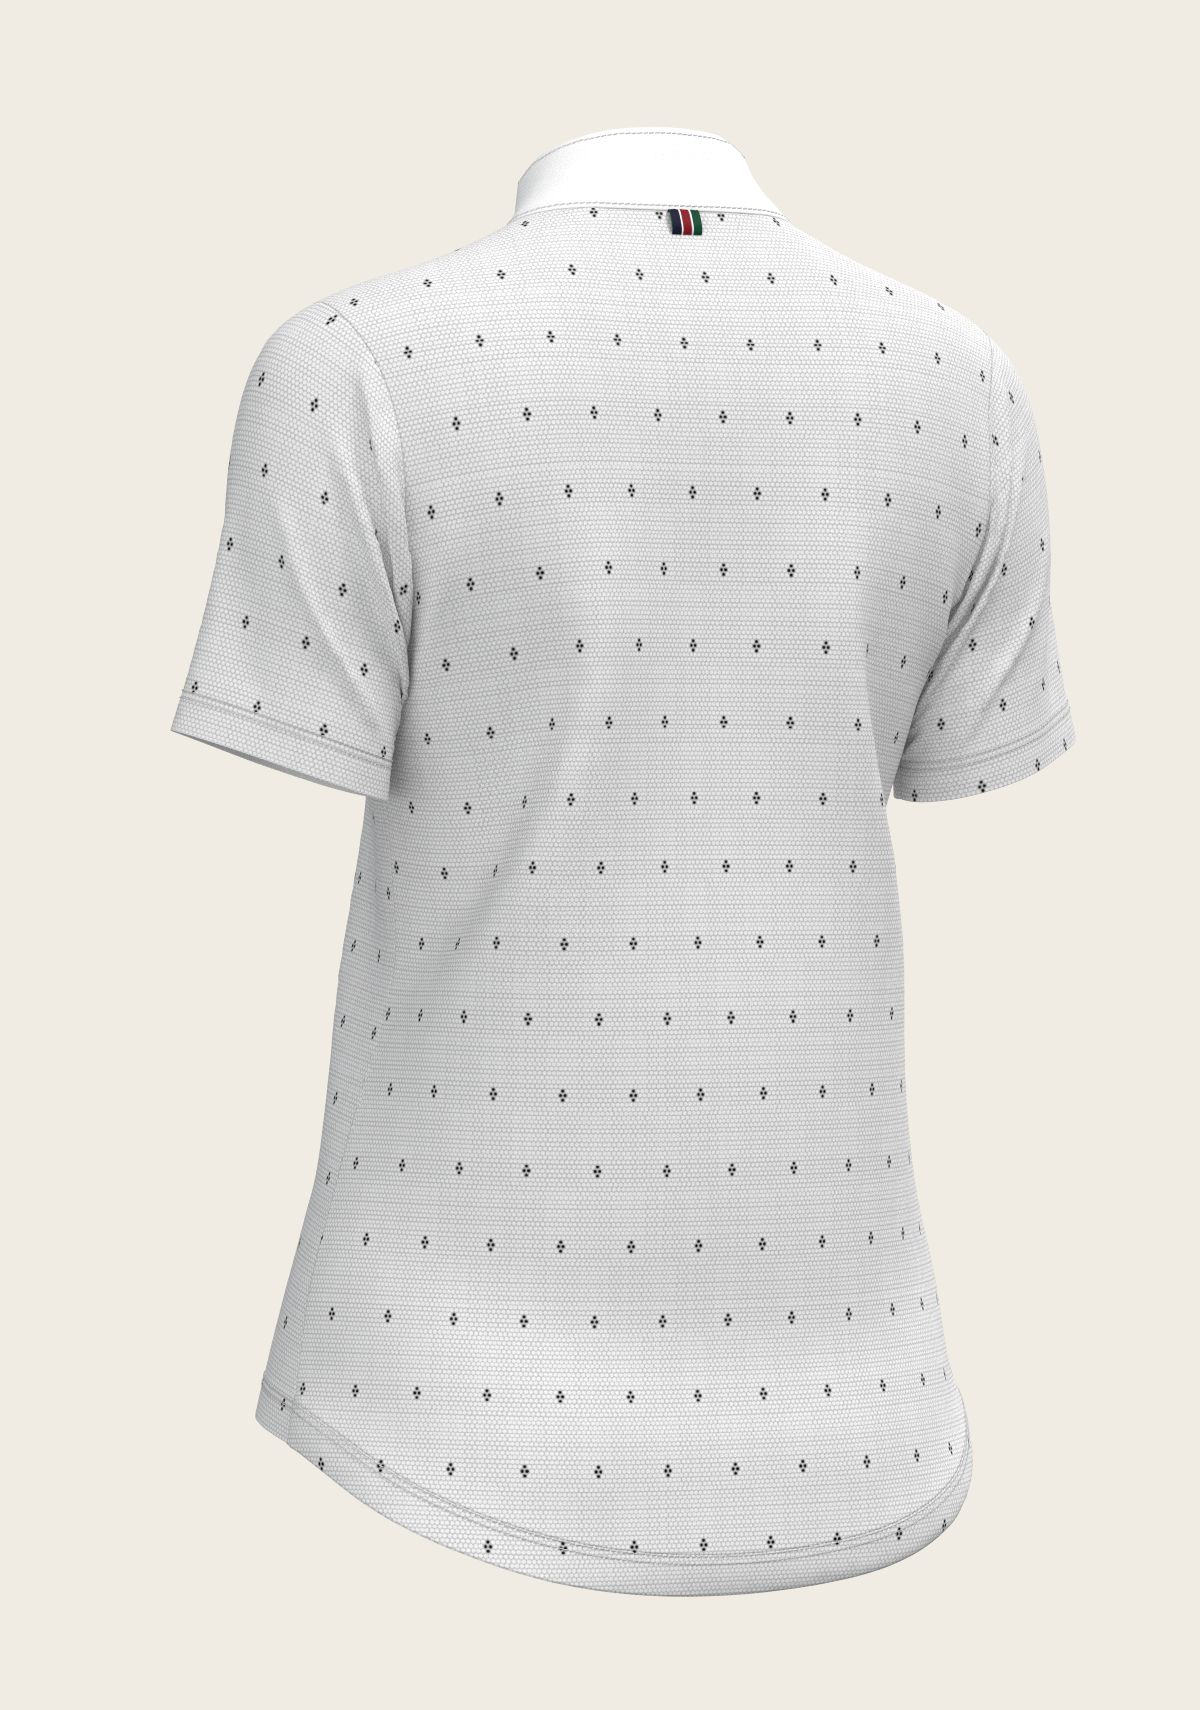 Mosaic 4 Dot Quarter Zip Short Sleeve Show Shirt